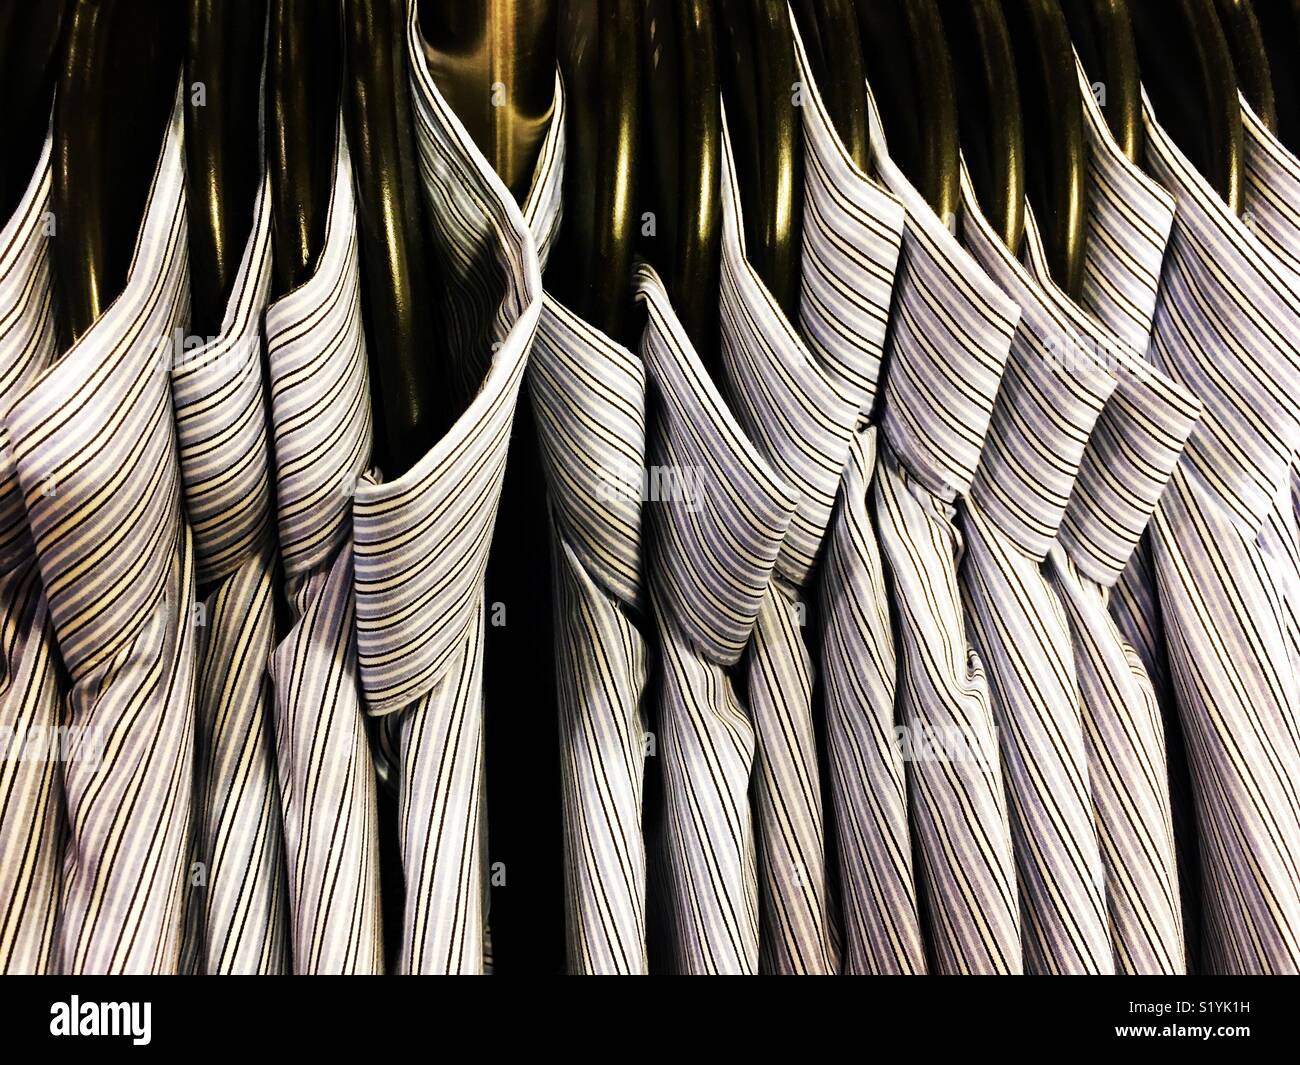 Rack di camicie di cotone su appendiabiti. Foto Stock